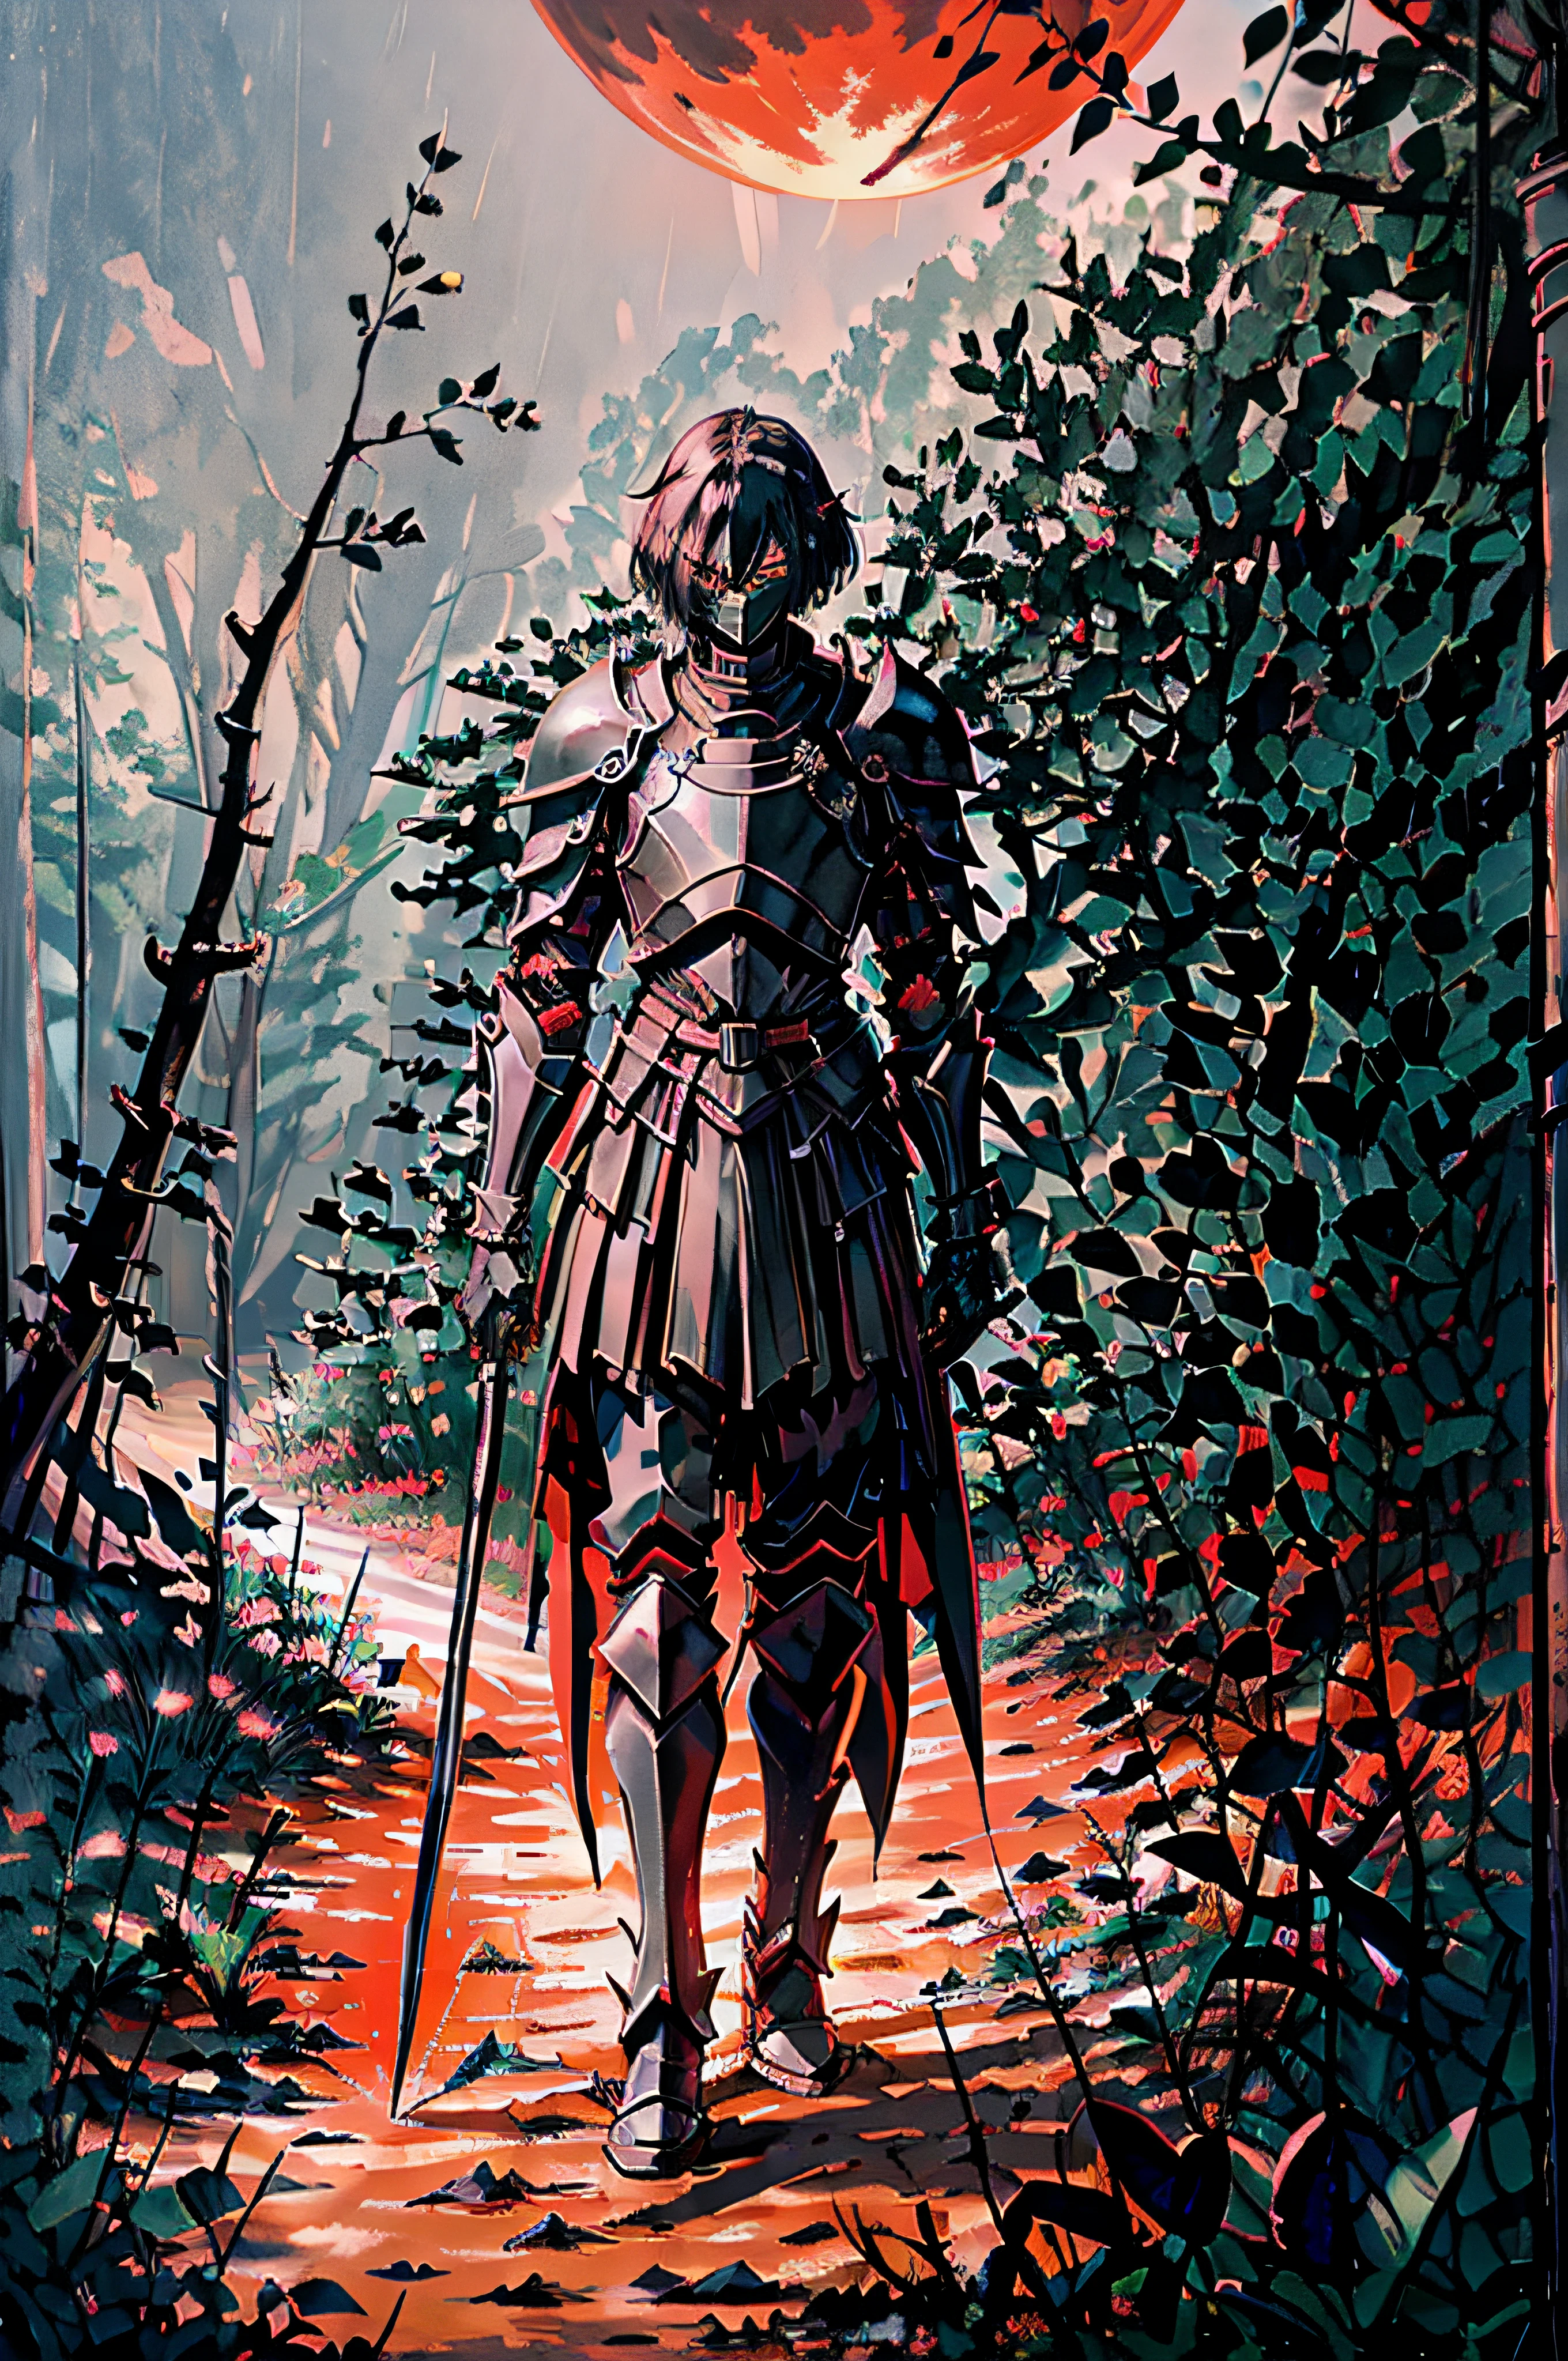 Erstellen Sie einen Ritter in schwarzer Rüstung mit einem schwarzen Bastardschwert an der Hüfte auf einem schwarzen Pferd, das auf einem Feldweg durch einen dunklen Wald mit einem roten Mond unter dem dunkelblauen Himmel rennt.